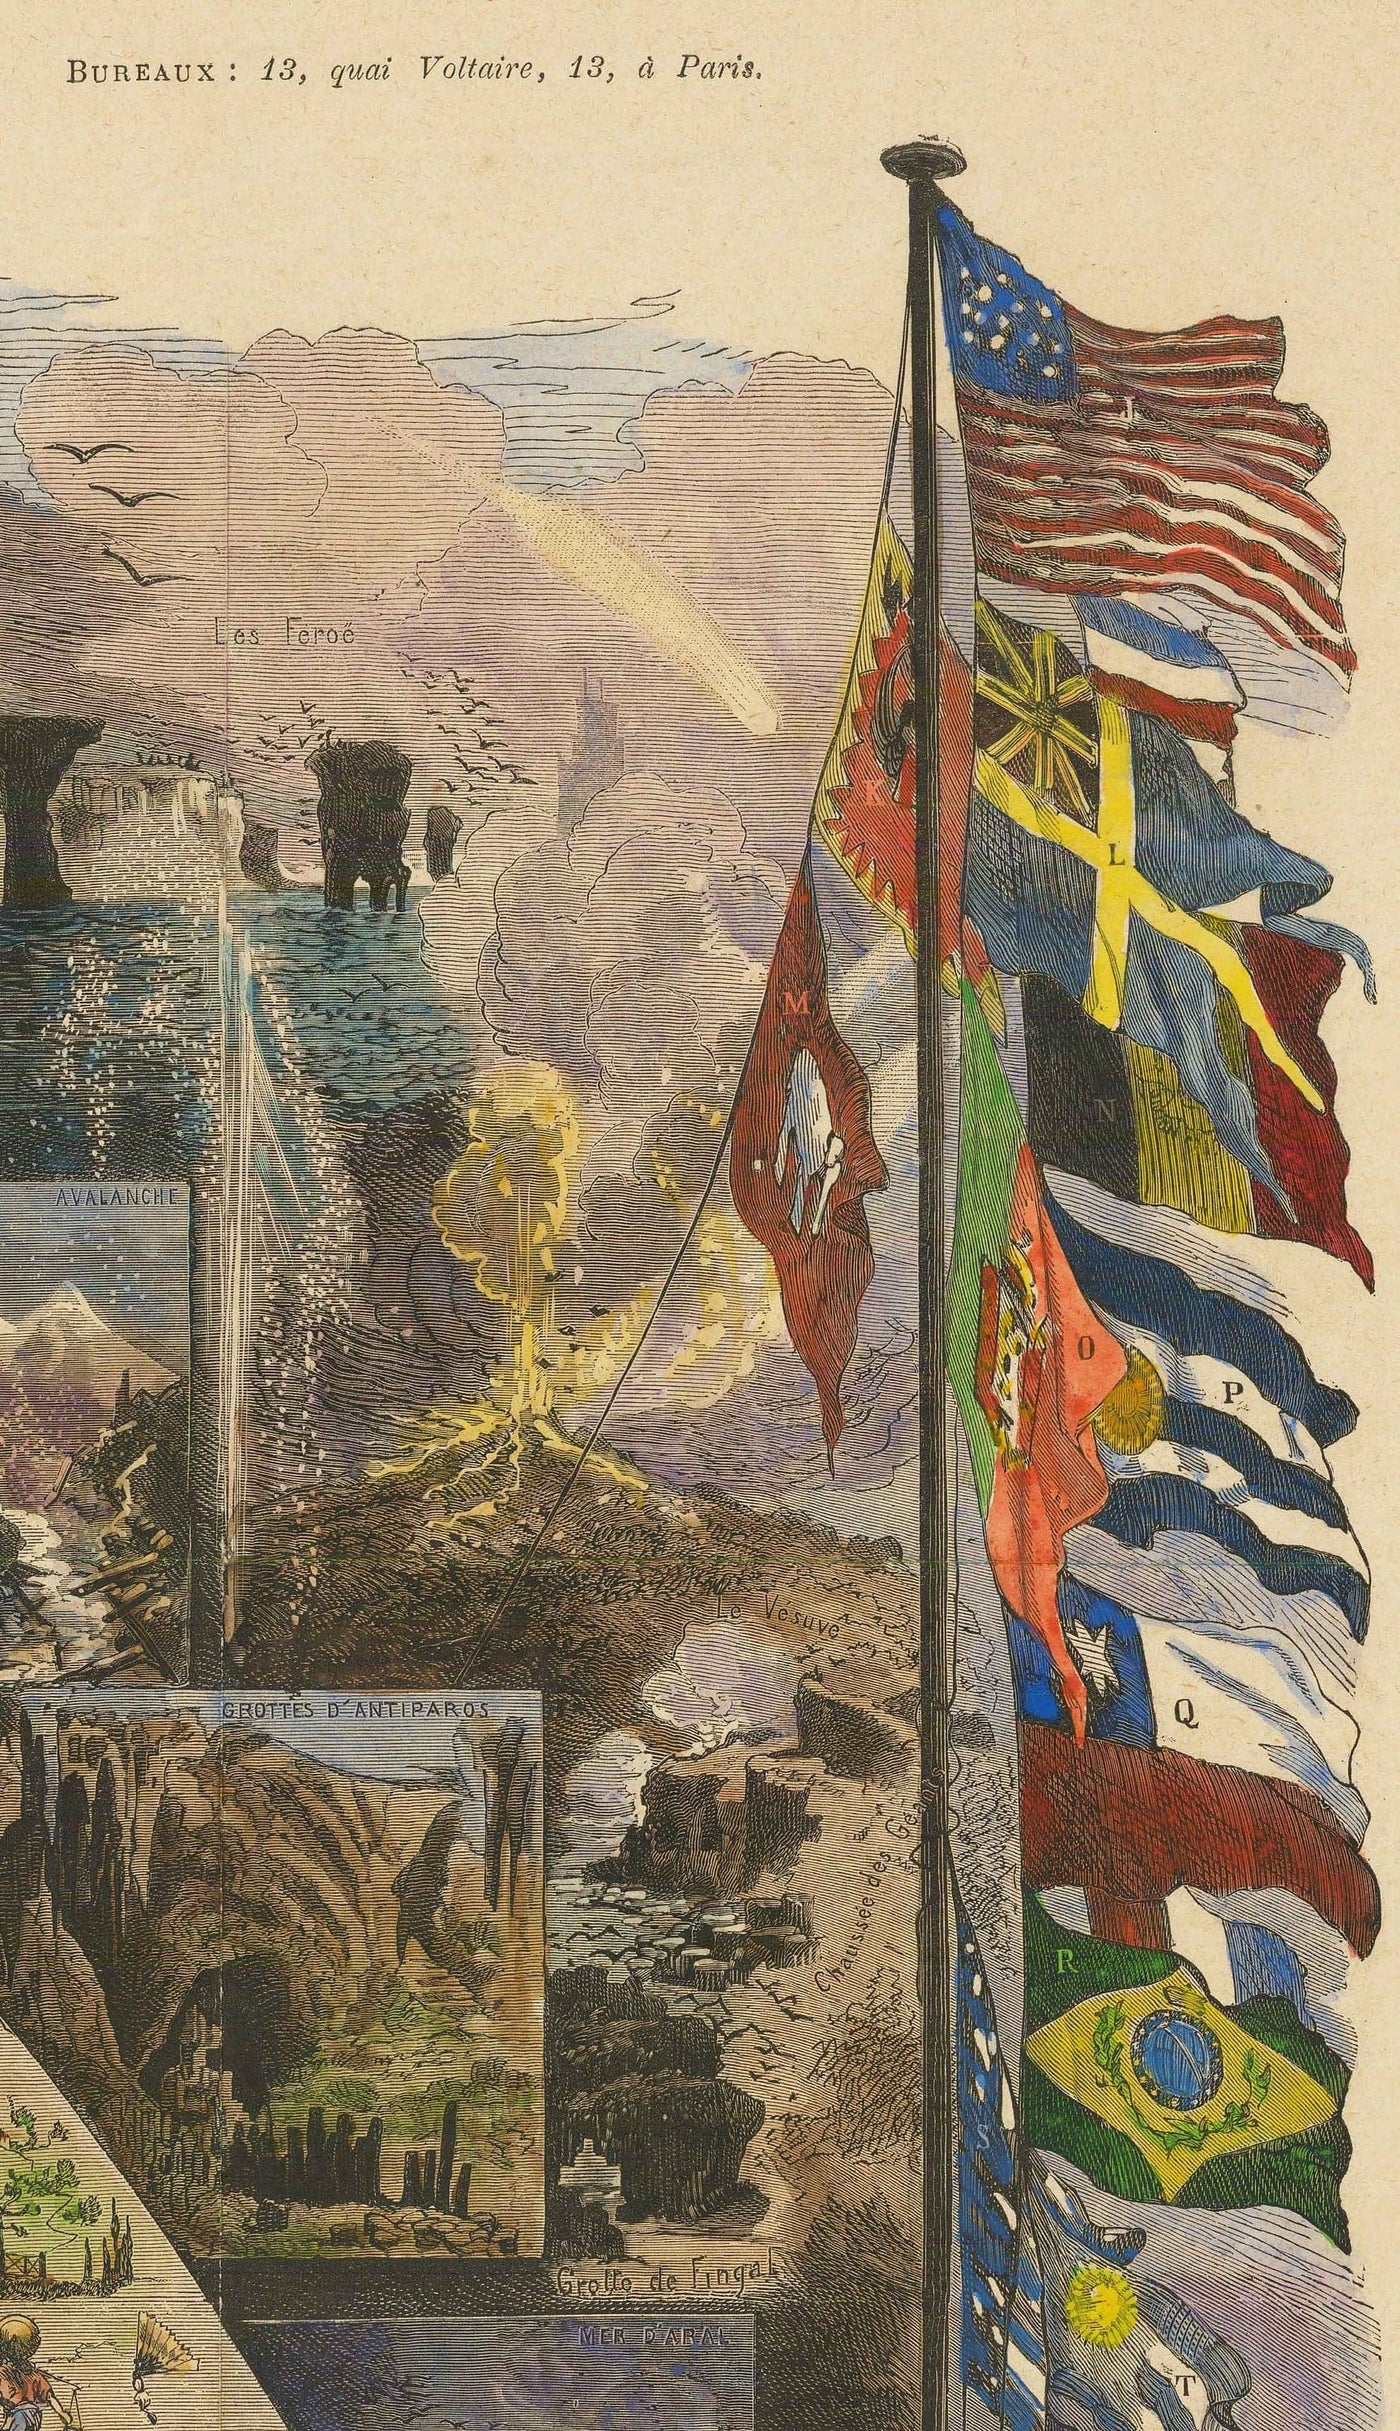 Alte Weltkarte, 1876 - "Ein Tour der Welt" von Le Monde - Erkundung des 19. Jahrhunderts, Geschichte, Kolonialismus